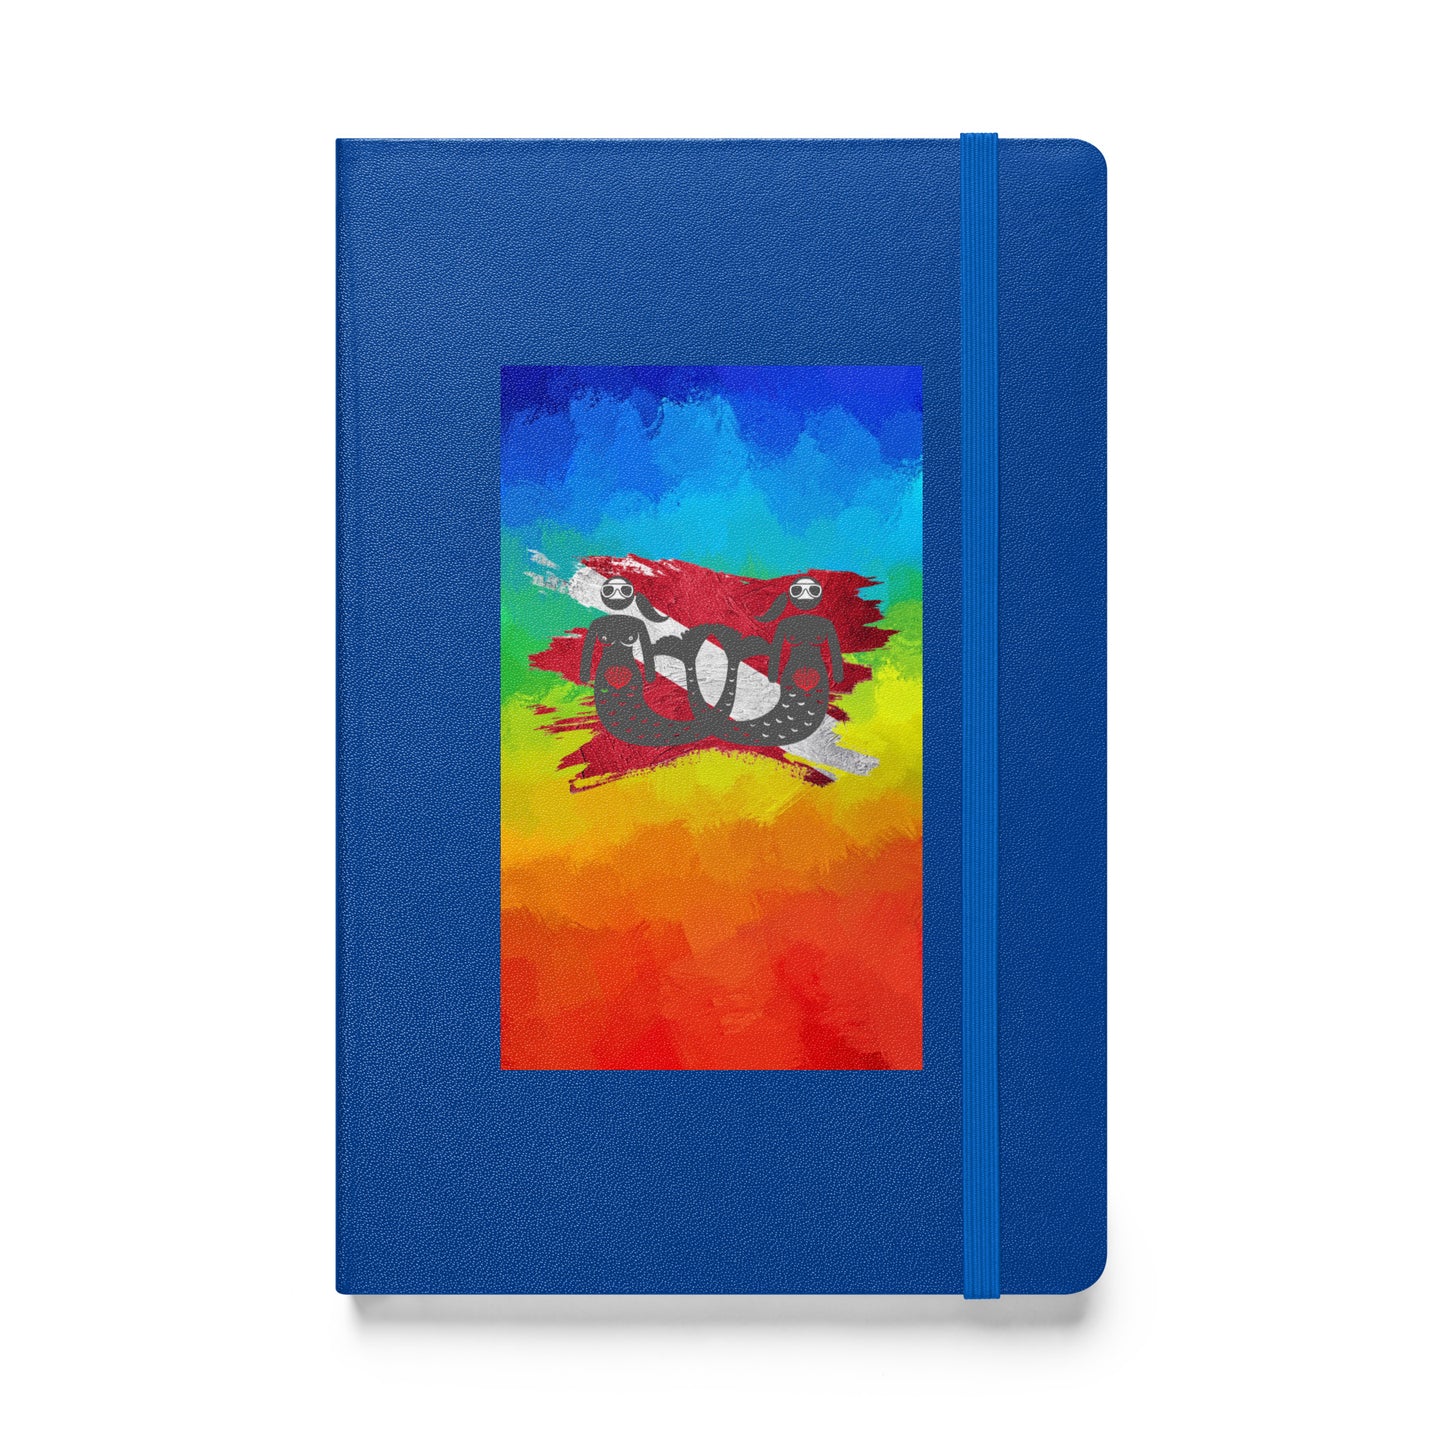 Adventure Mermaid Womxn Dive Hardcover log / notebook